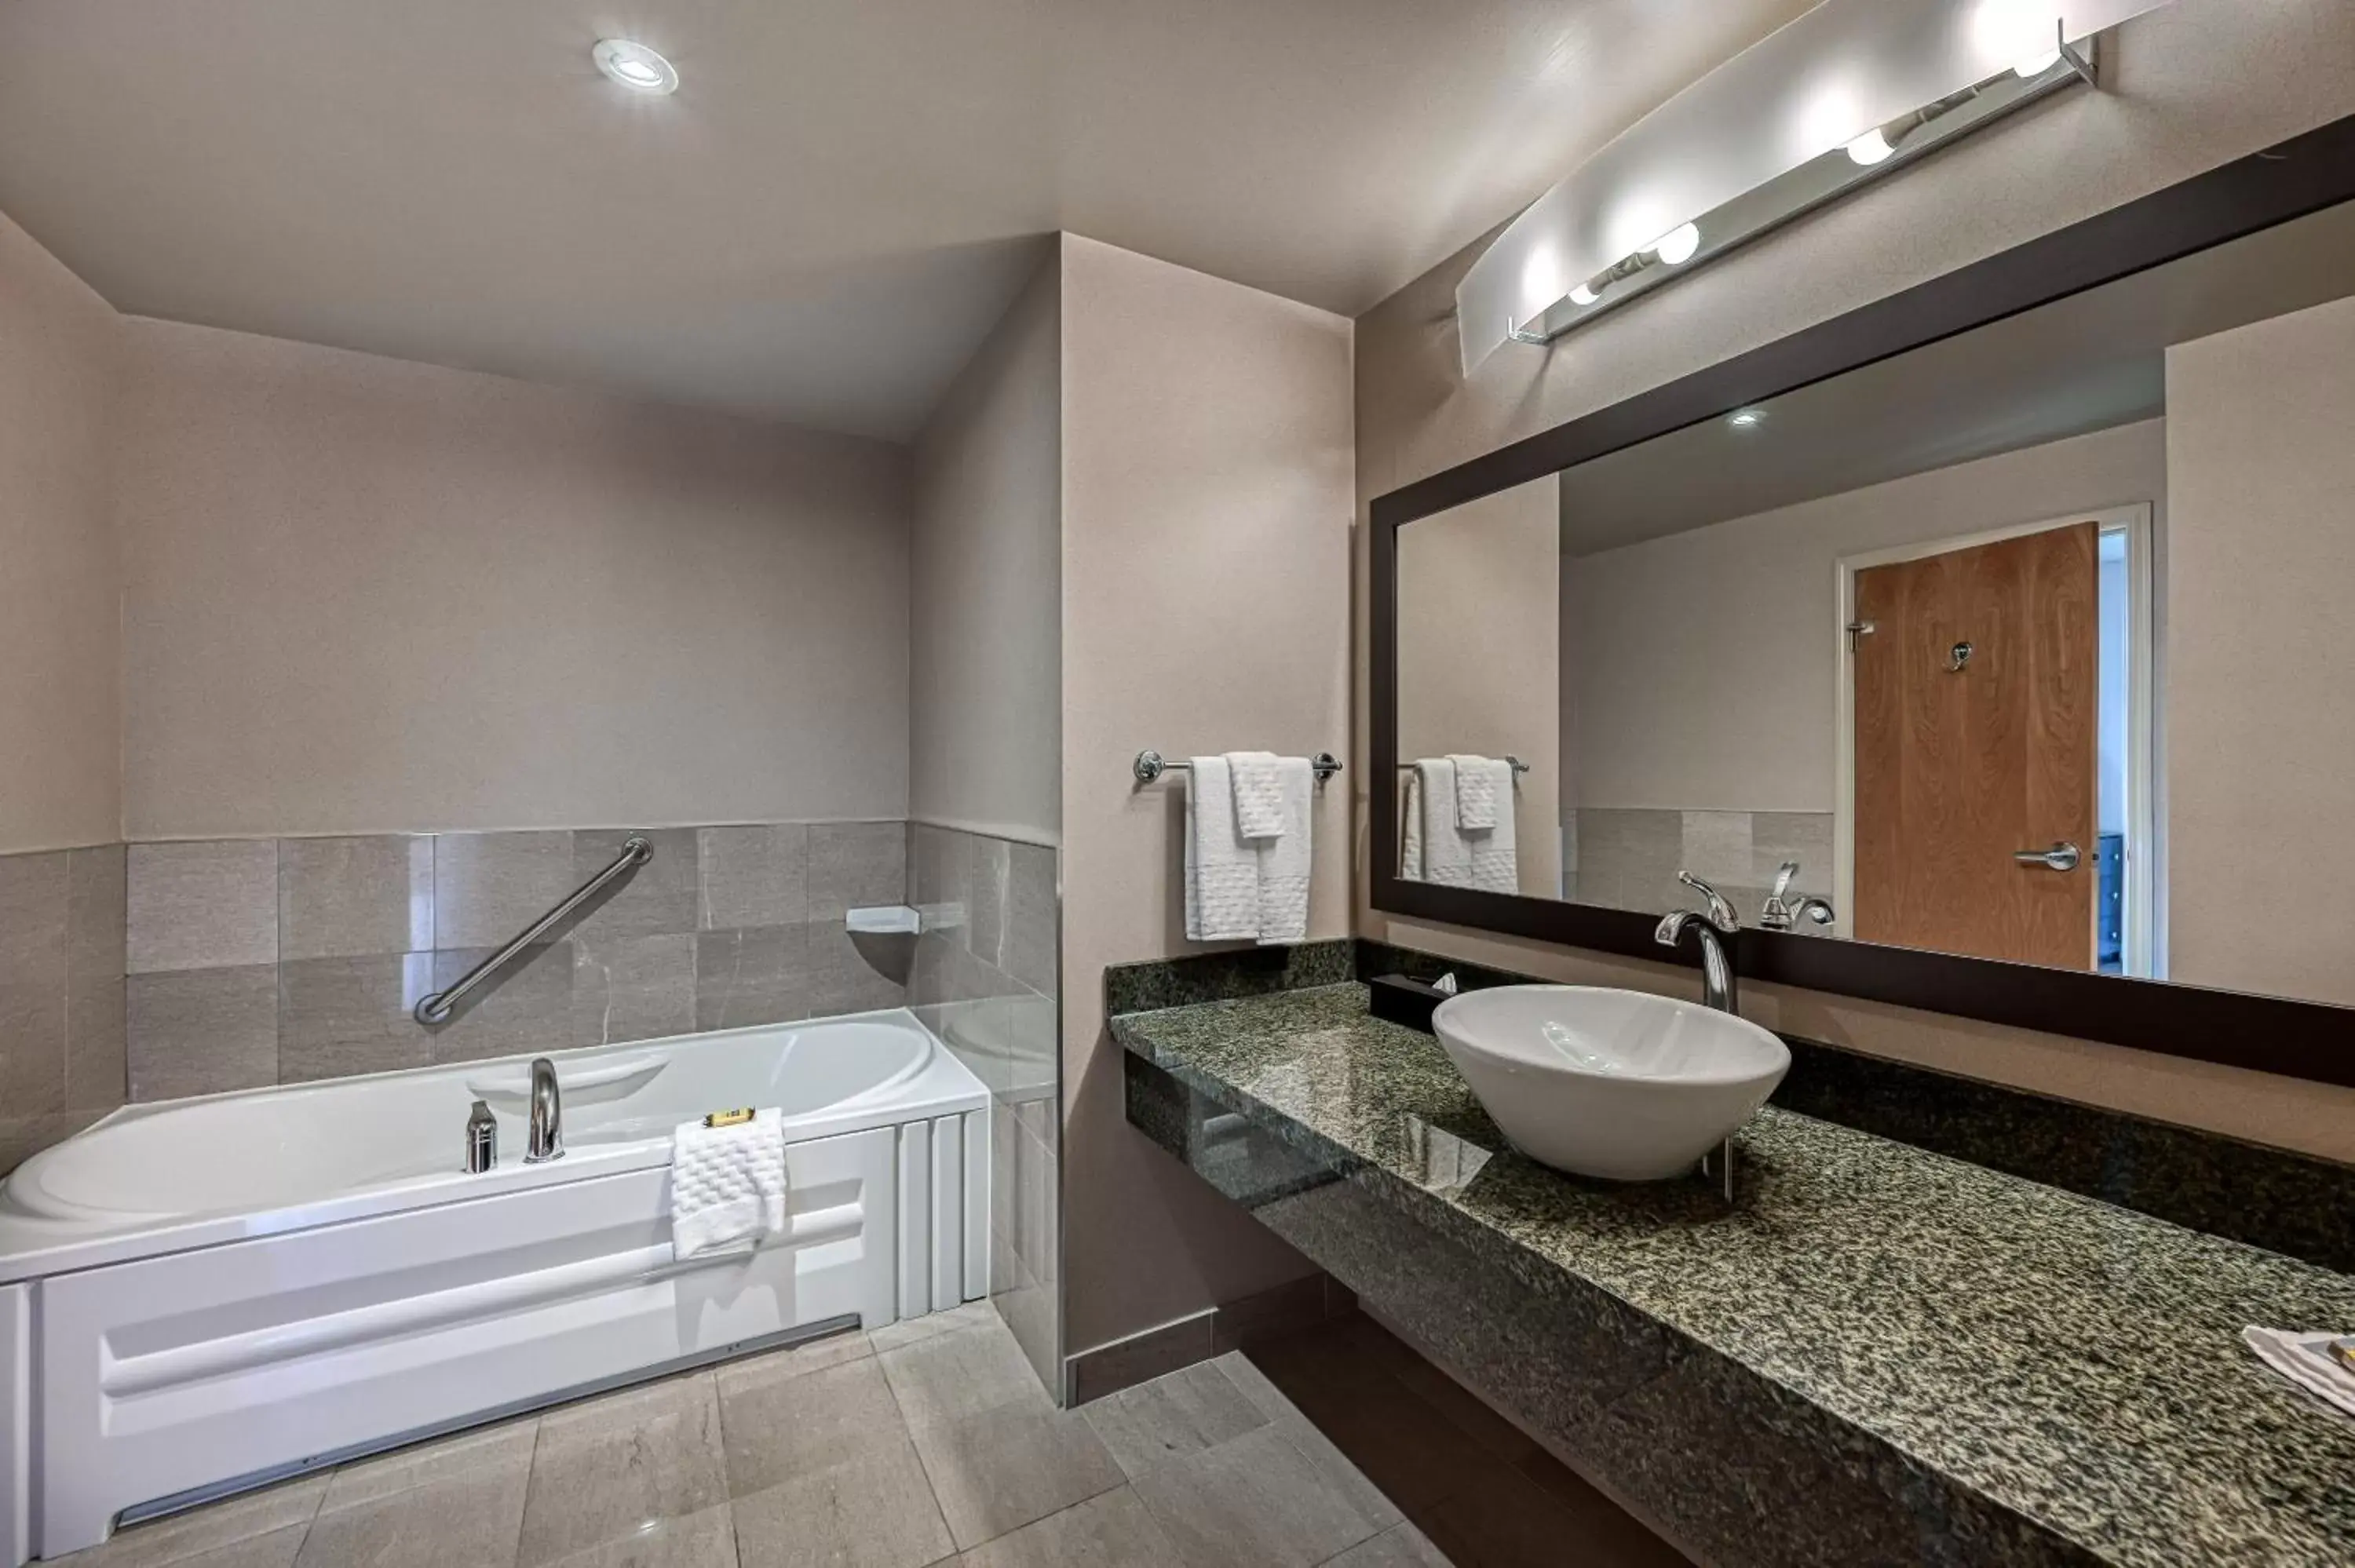 Property building, Bathroom in Best Western Plus Perth Parkside Inn & Spa